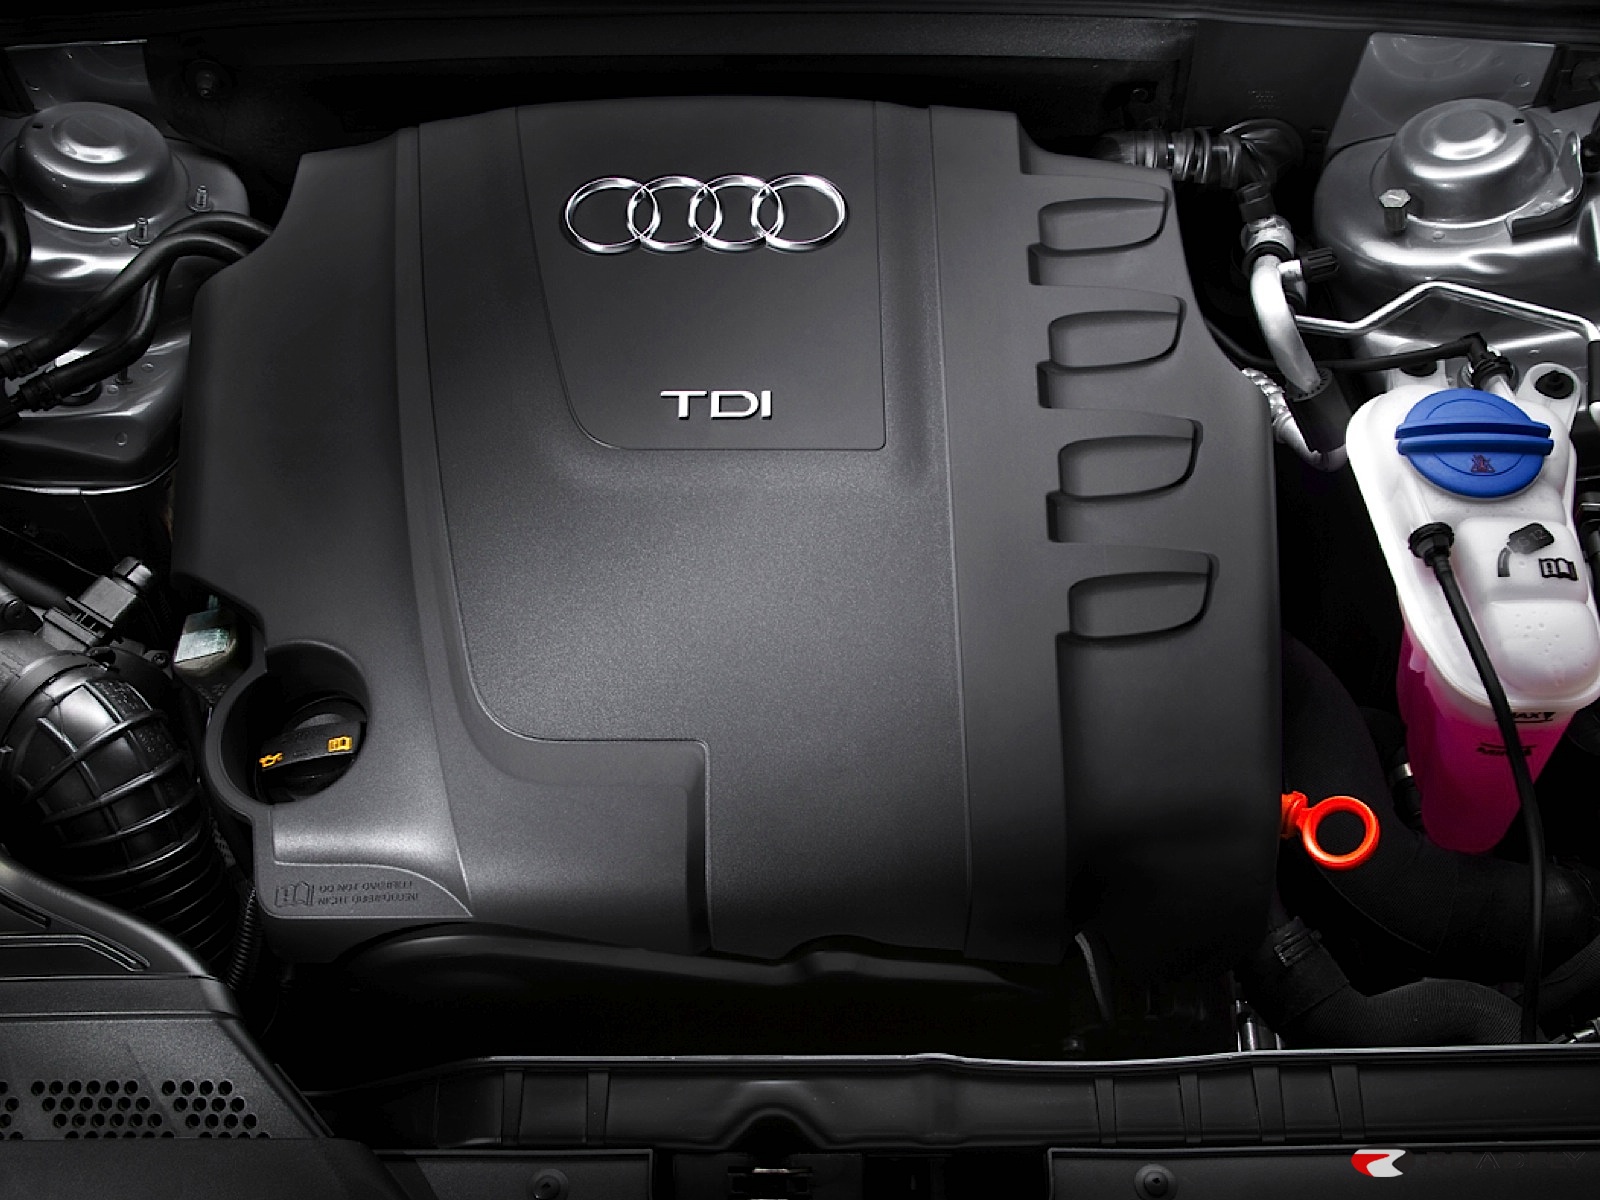 Audi - TDI engine